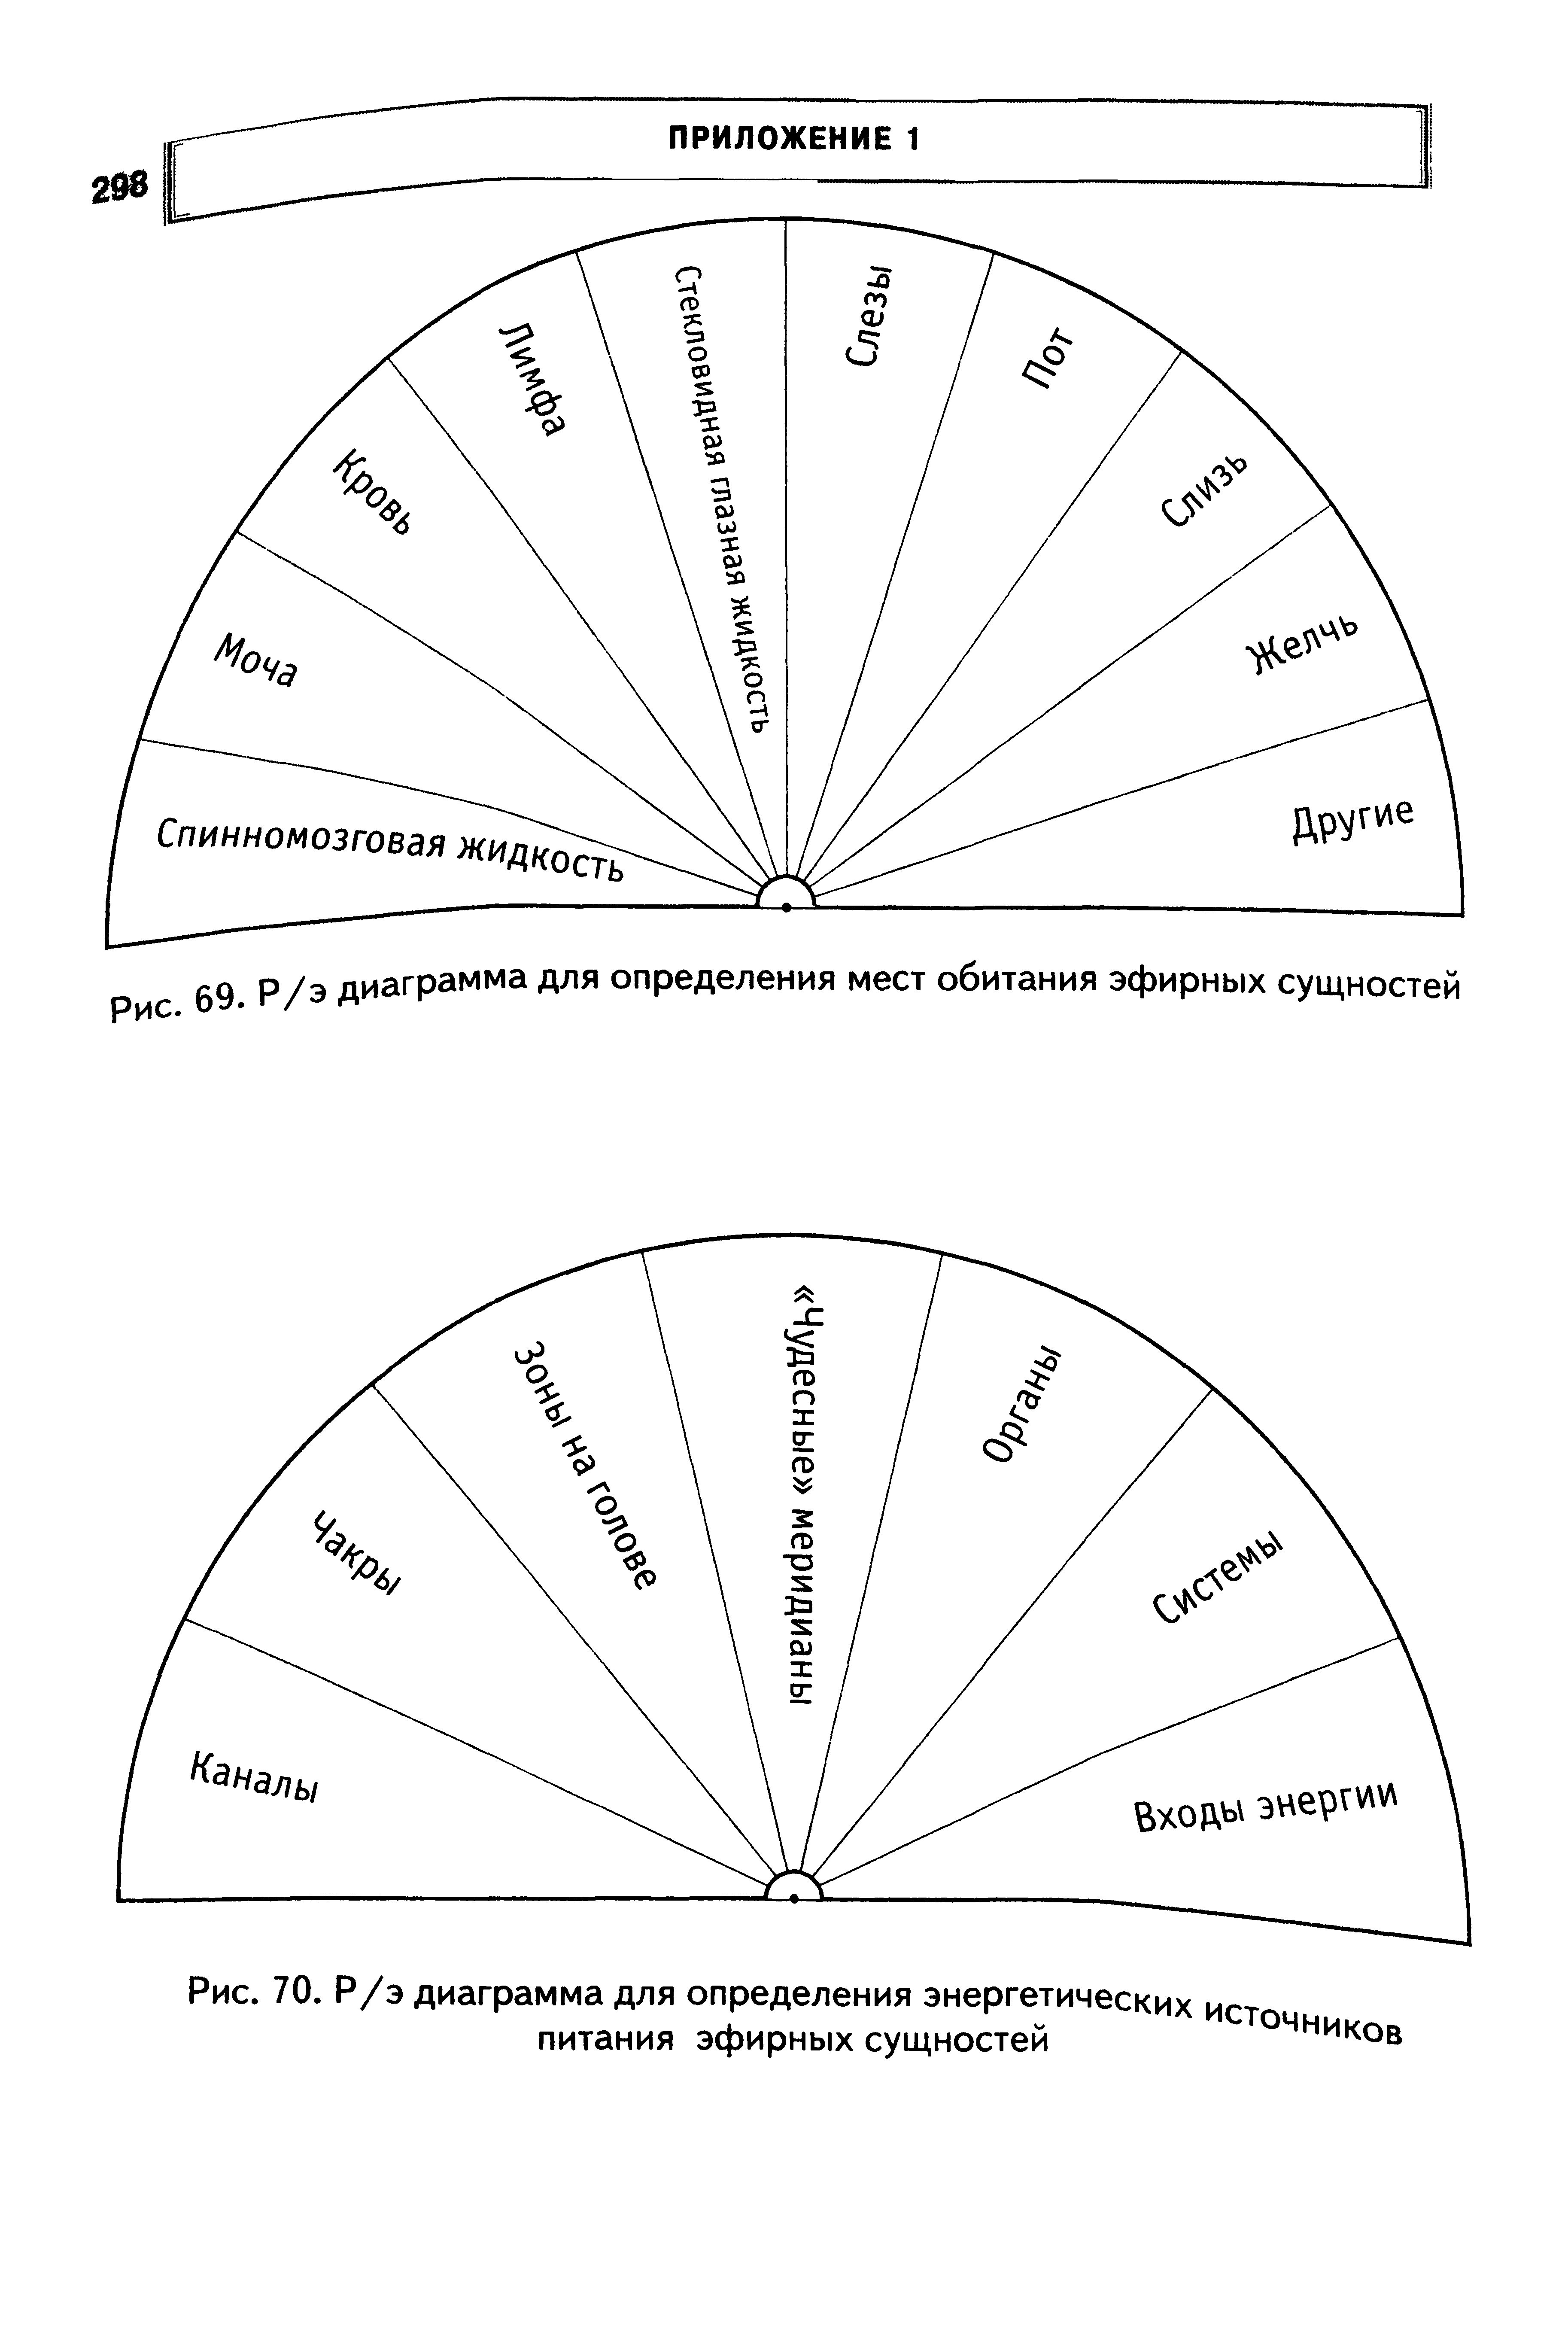 Рис. 70. Р/э диаграмма для определения энергетических питания эфирных сущностей...